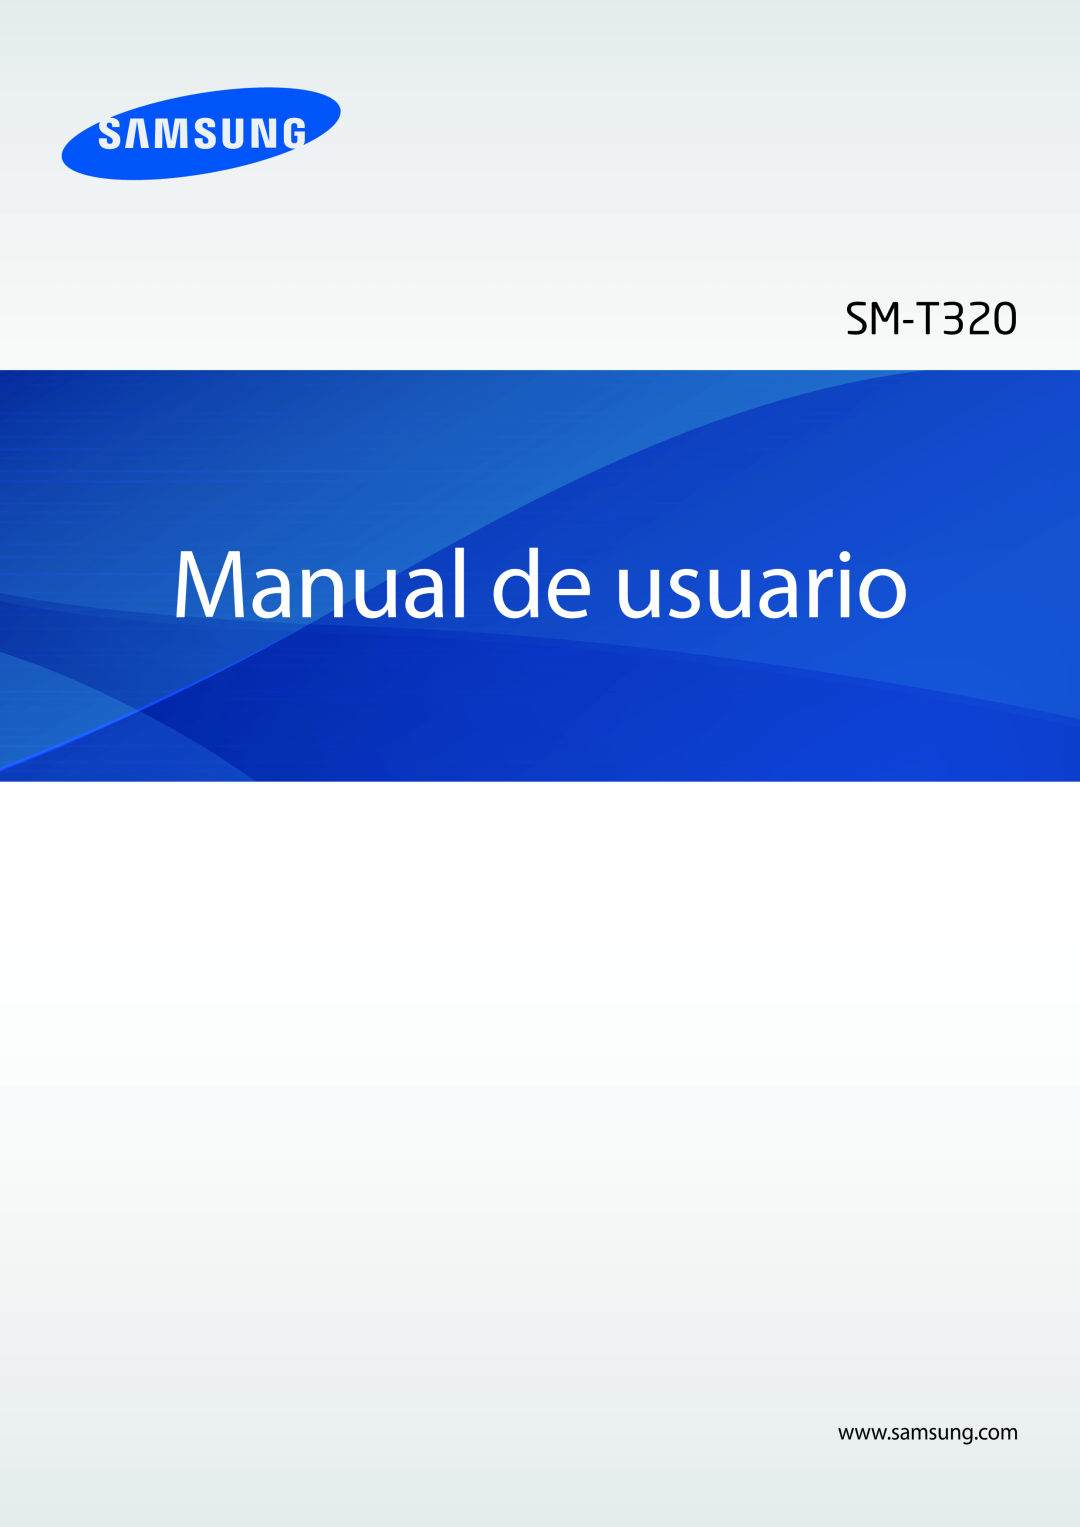 Samsung SM-T320NZWATPH, SM-T320NZKATPH, SM-T320NZWADBT, SM-T320NZWAPHE, SM-T320XZWAPHE manual Manual de usuario 